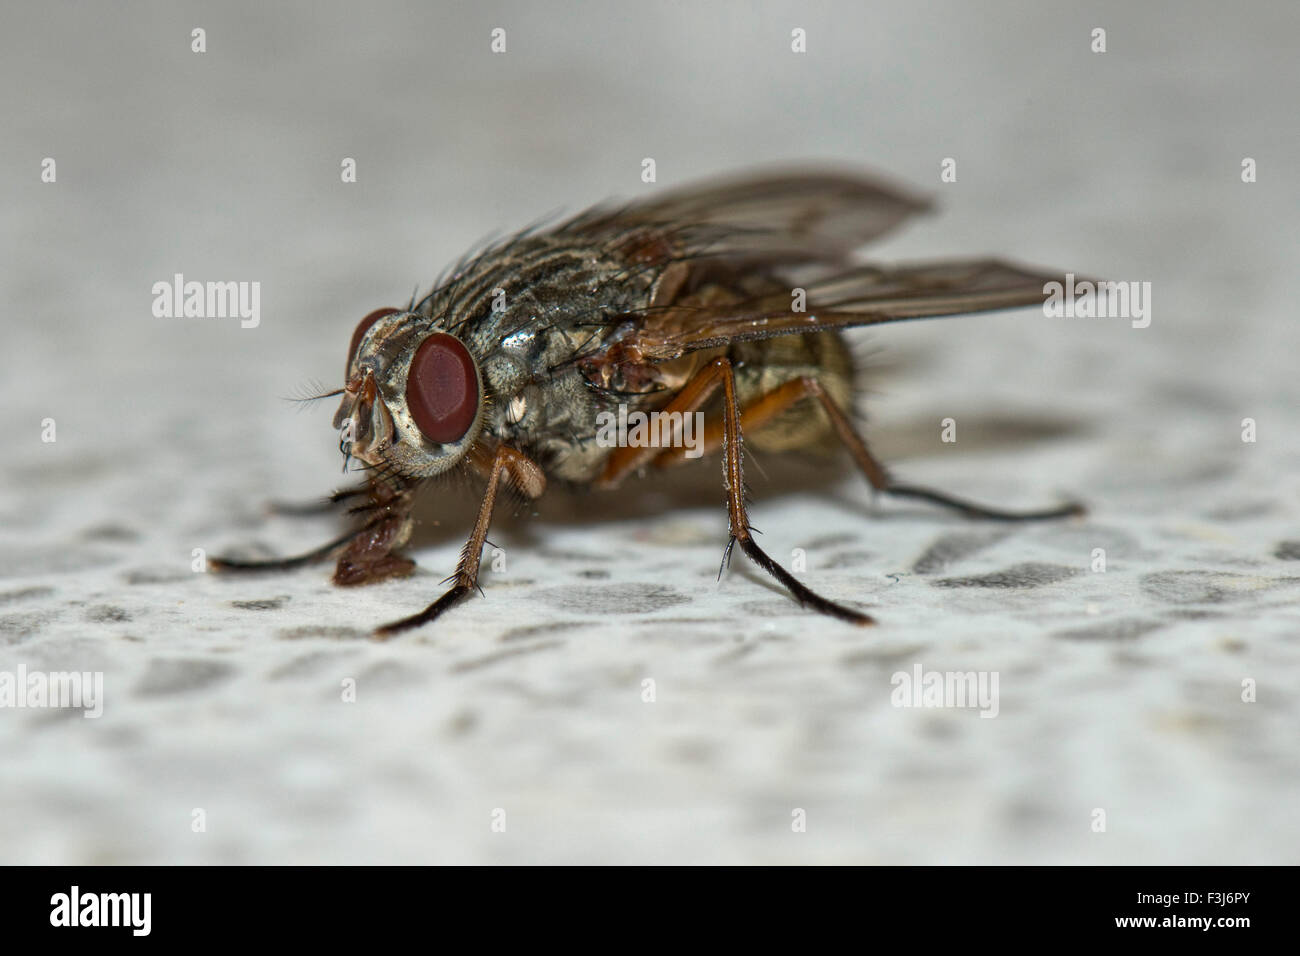 Una mosca común, Phaonia válida, utilizando su labelo para alimentar desde una superficie de trabajo de cocina, REINO UNIDO Foto de stock